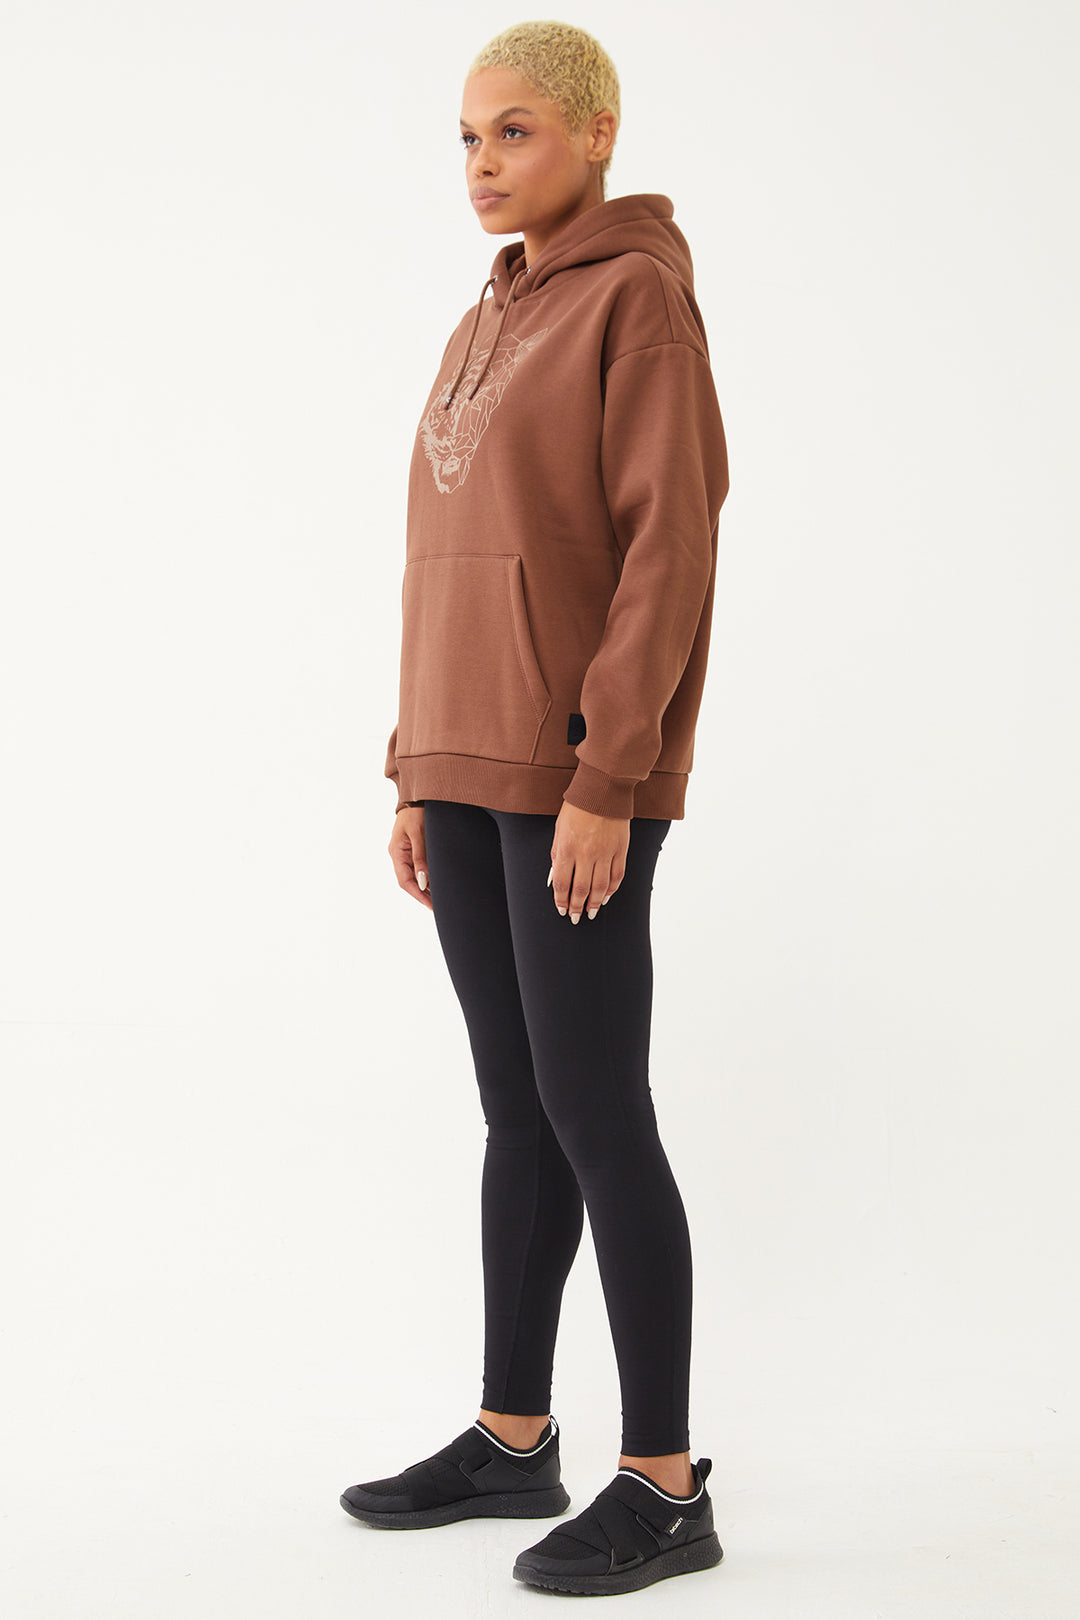 Damen-Sweatshirt mit Kapuze und glitzerndem Aufdruck